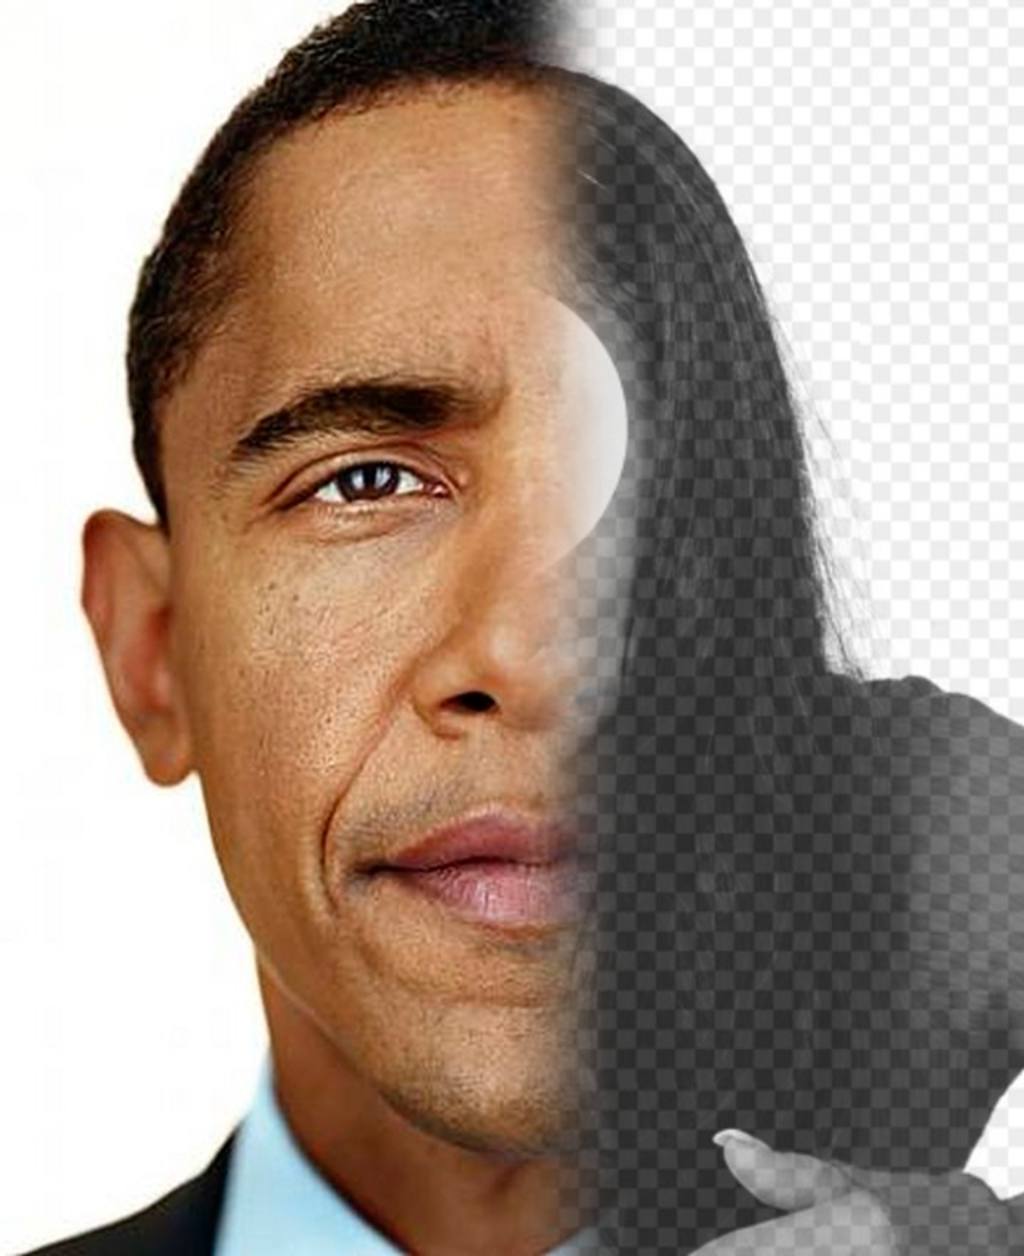 Erstellen Sie eine Fotomontage mit dem Gesicht von Präsident Obama mit der Hälfte Ihres Gesicht..